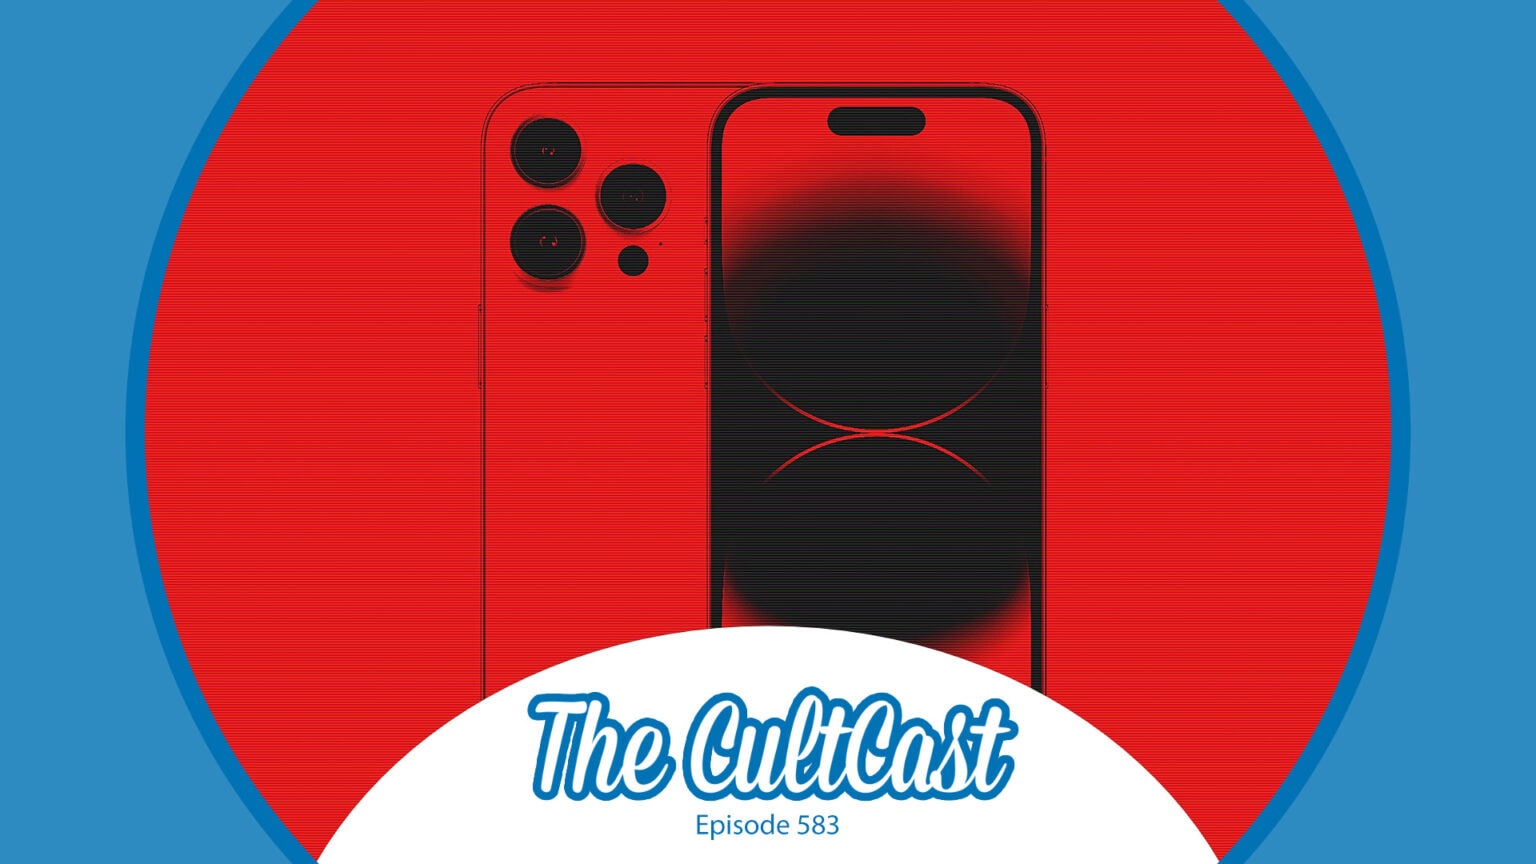 Le logo du podcast CultCast Apple avec un iPhone Pro et un fond rouge en colère.